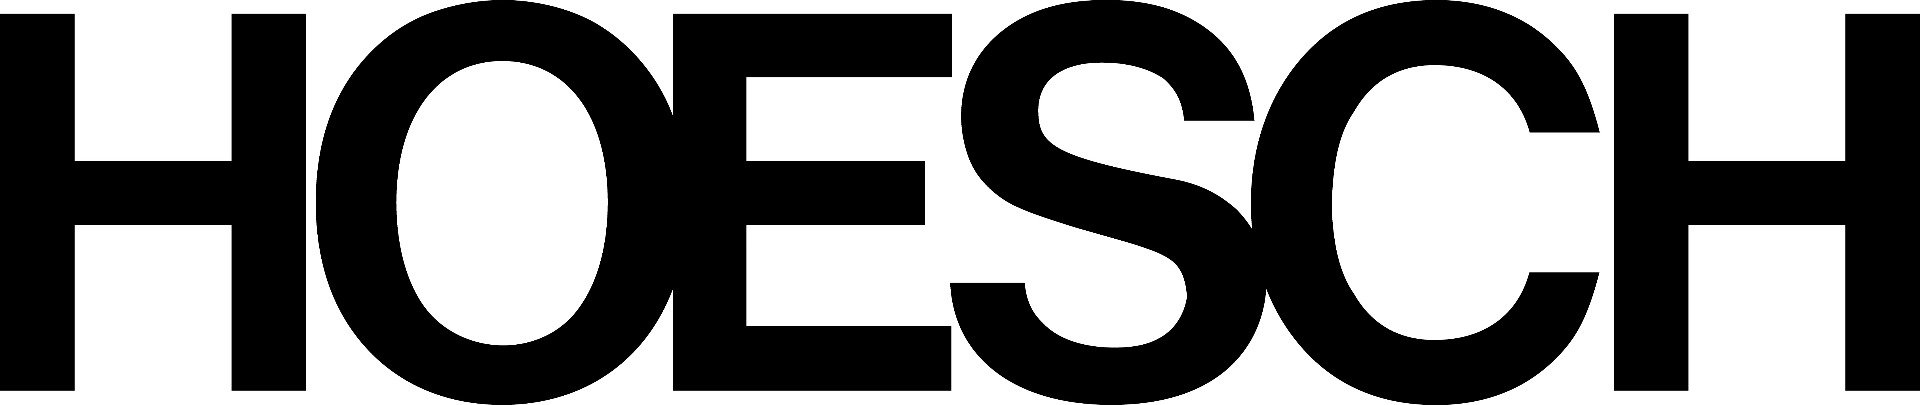 Логотип бренда Hoesch